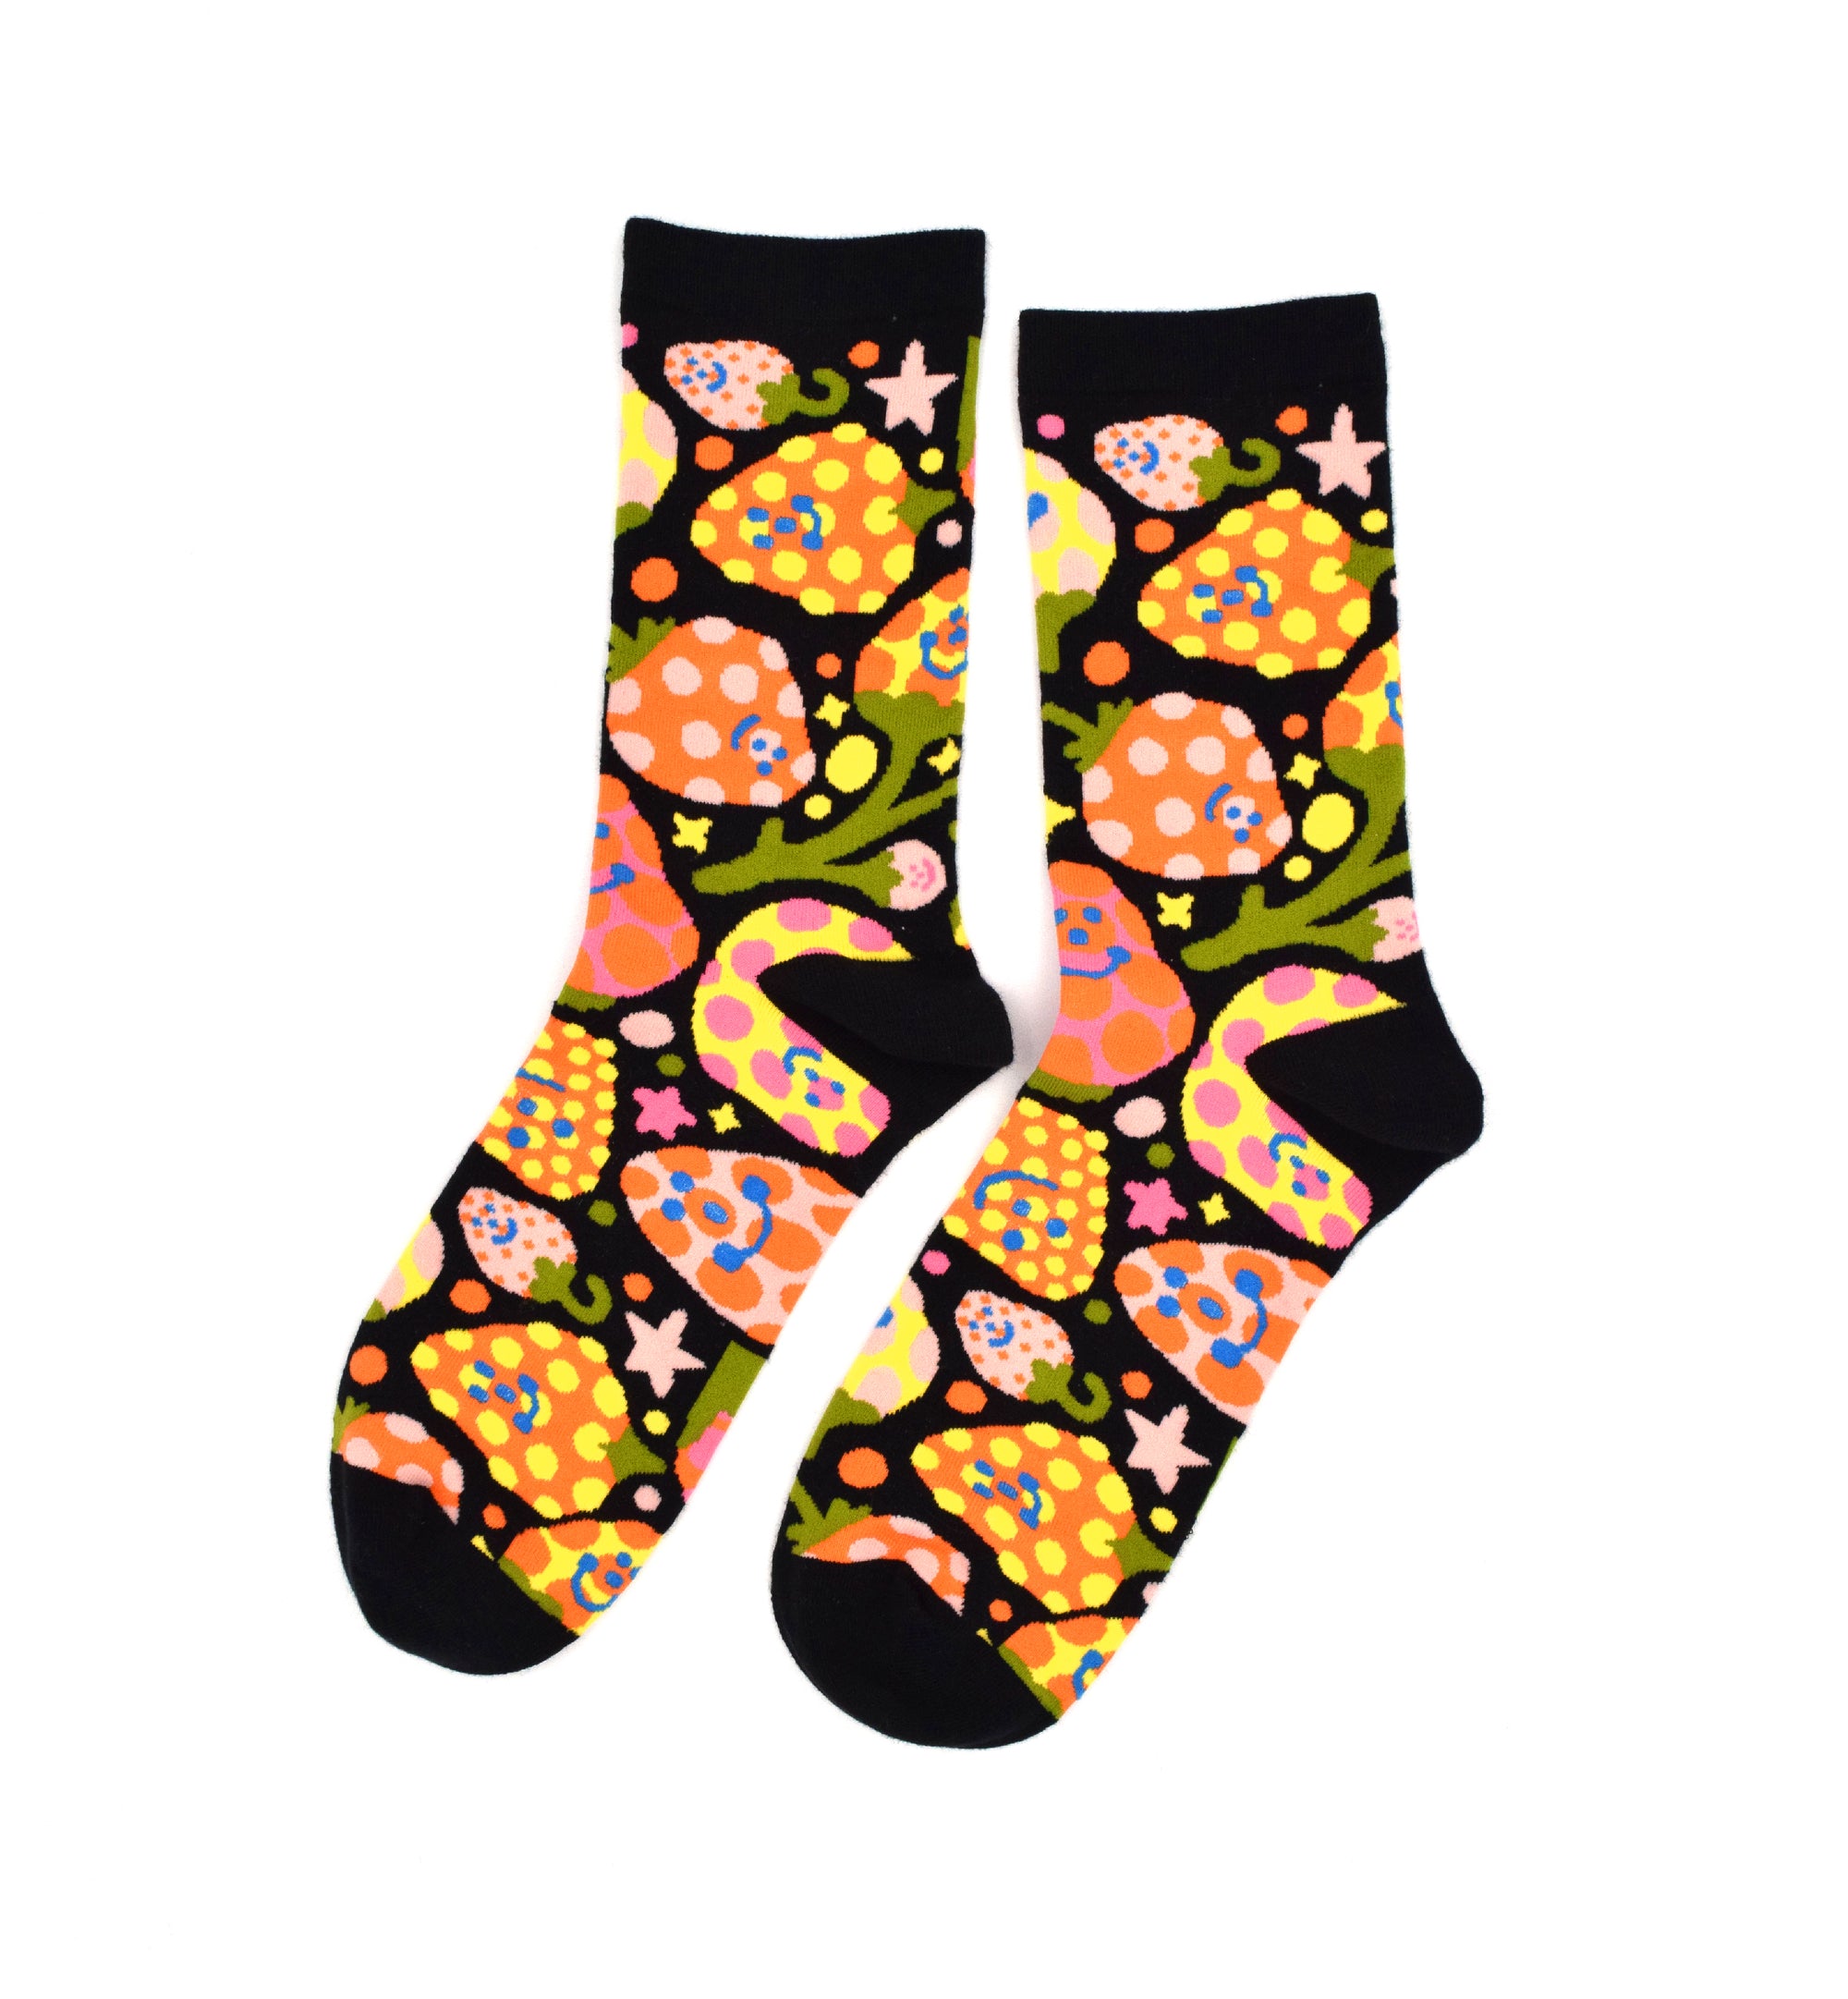 Past Designs – Awesome Socks Club